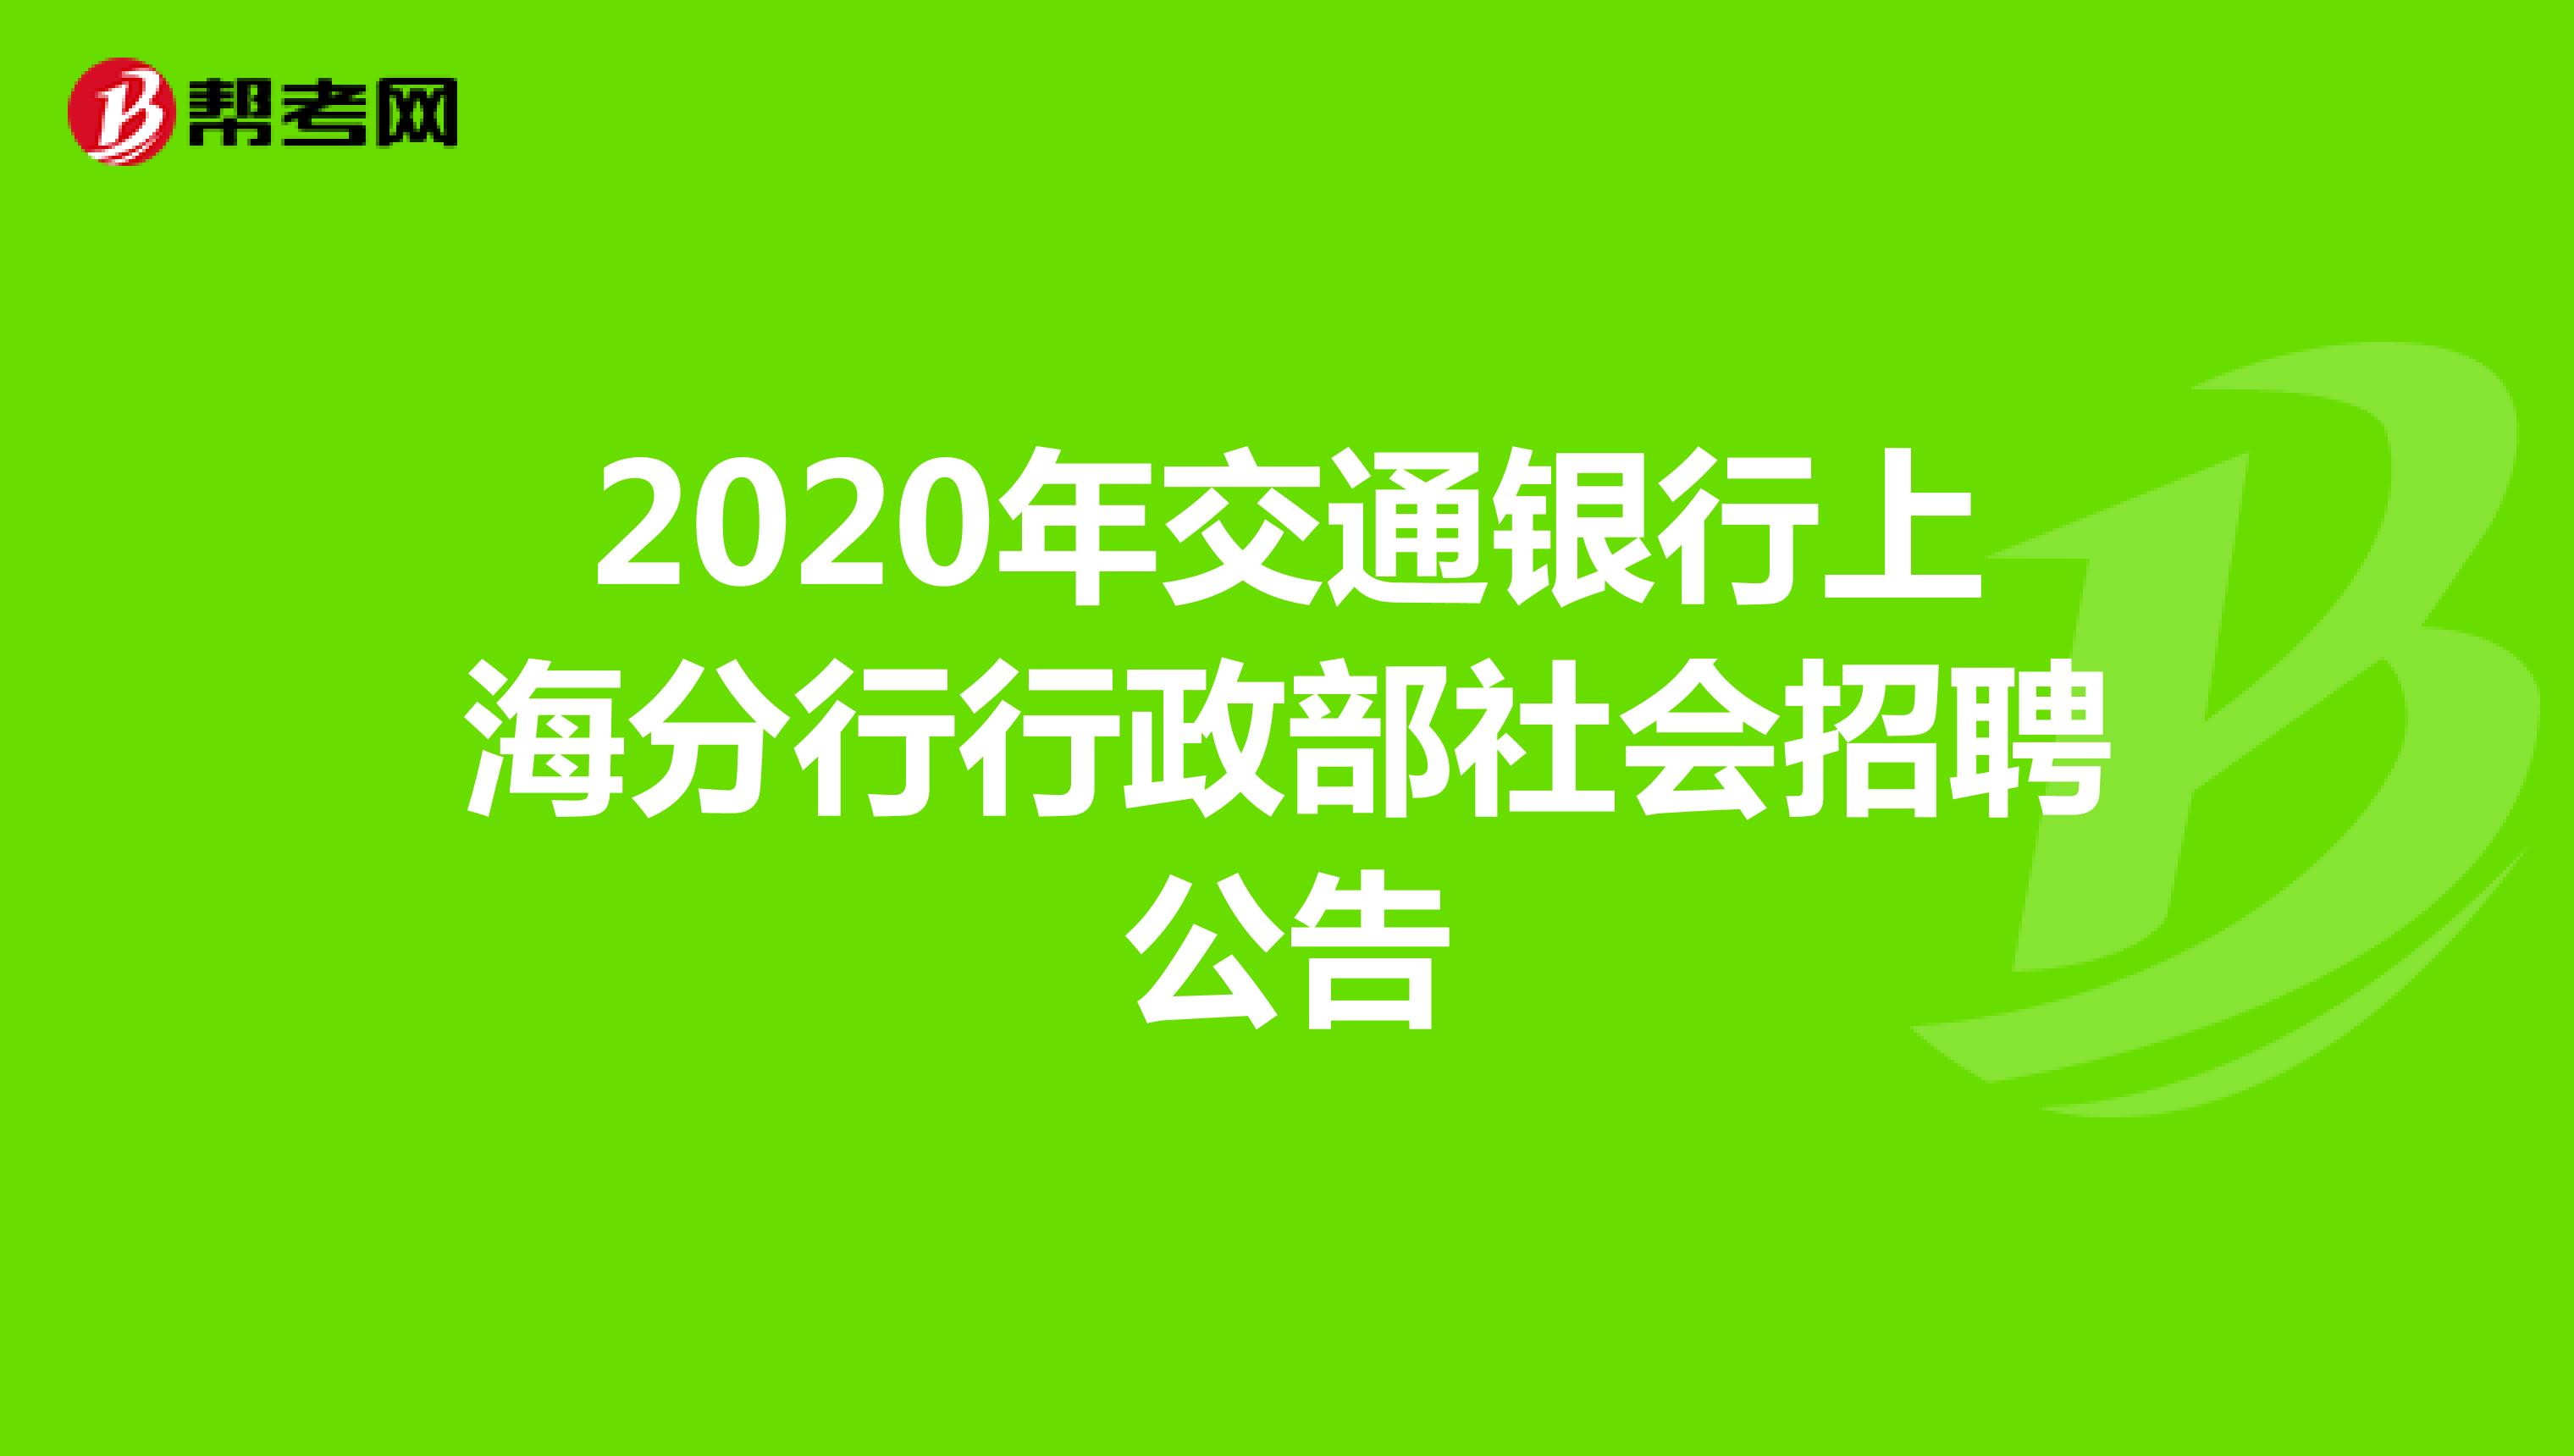 2020年交通银行上海分行行政部社会招聘公告